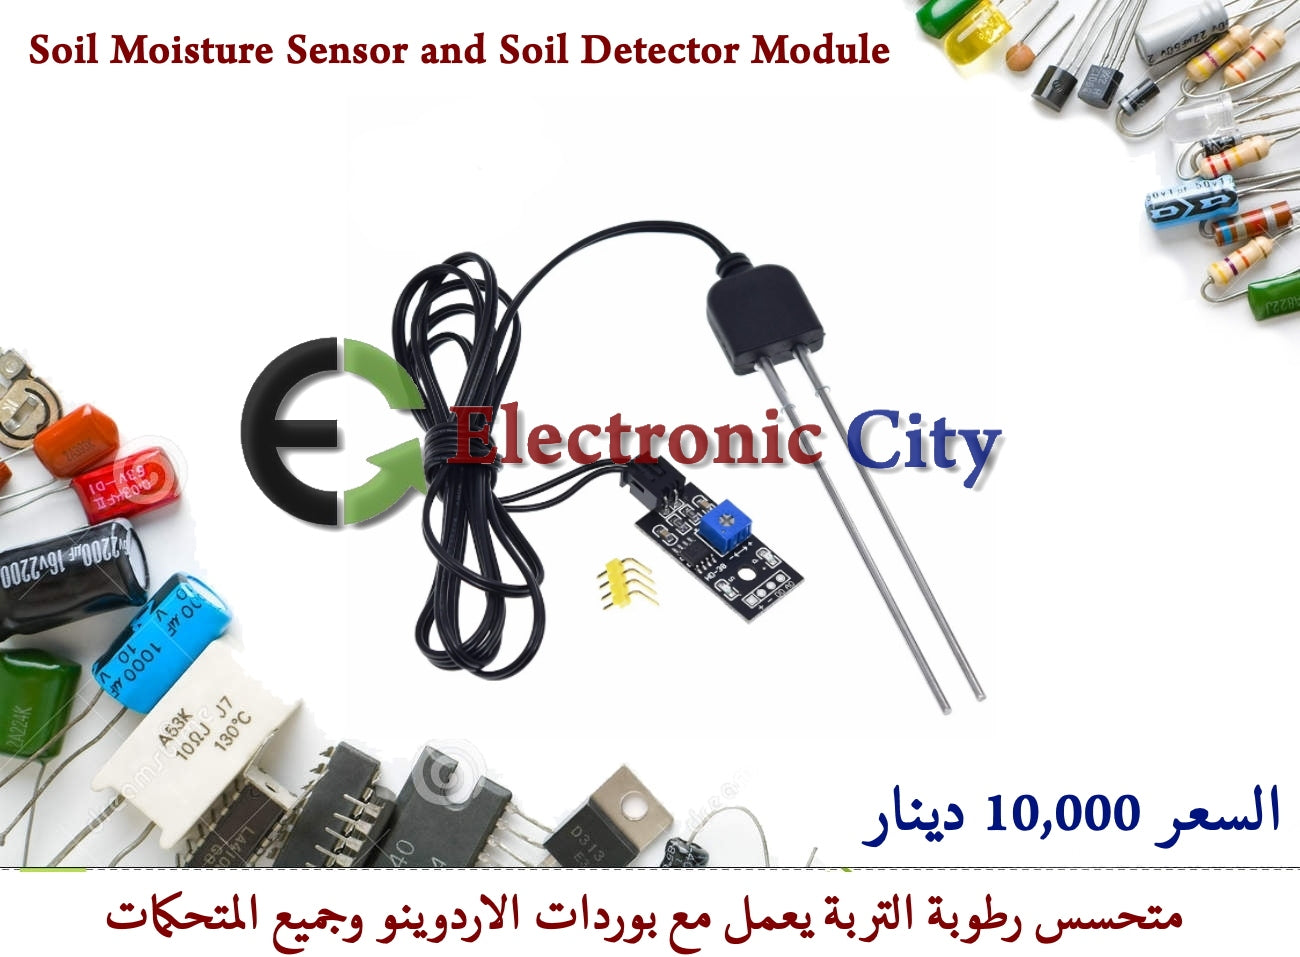 Soil Moisture Sensor and Soil Detector Module